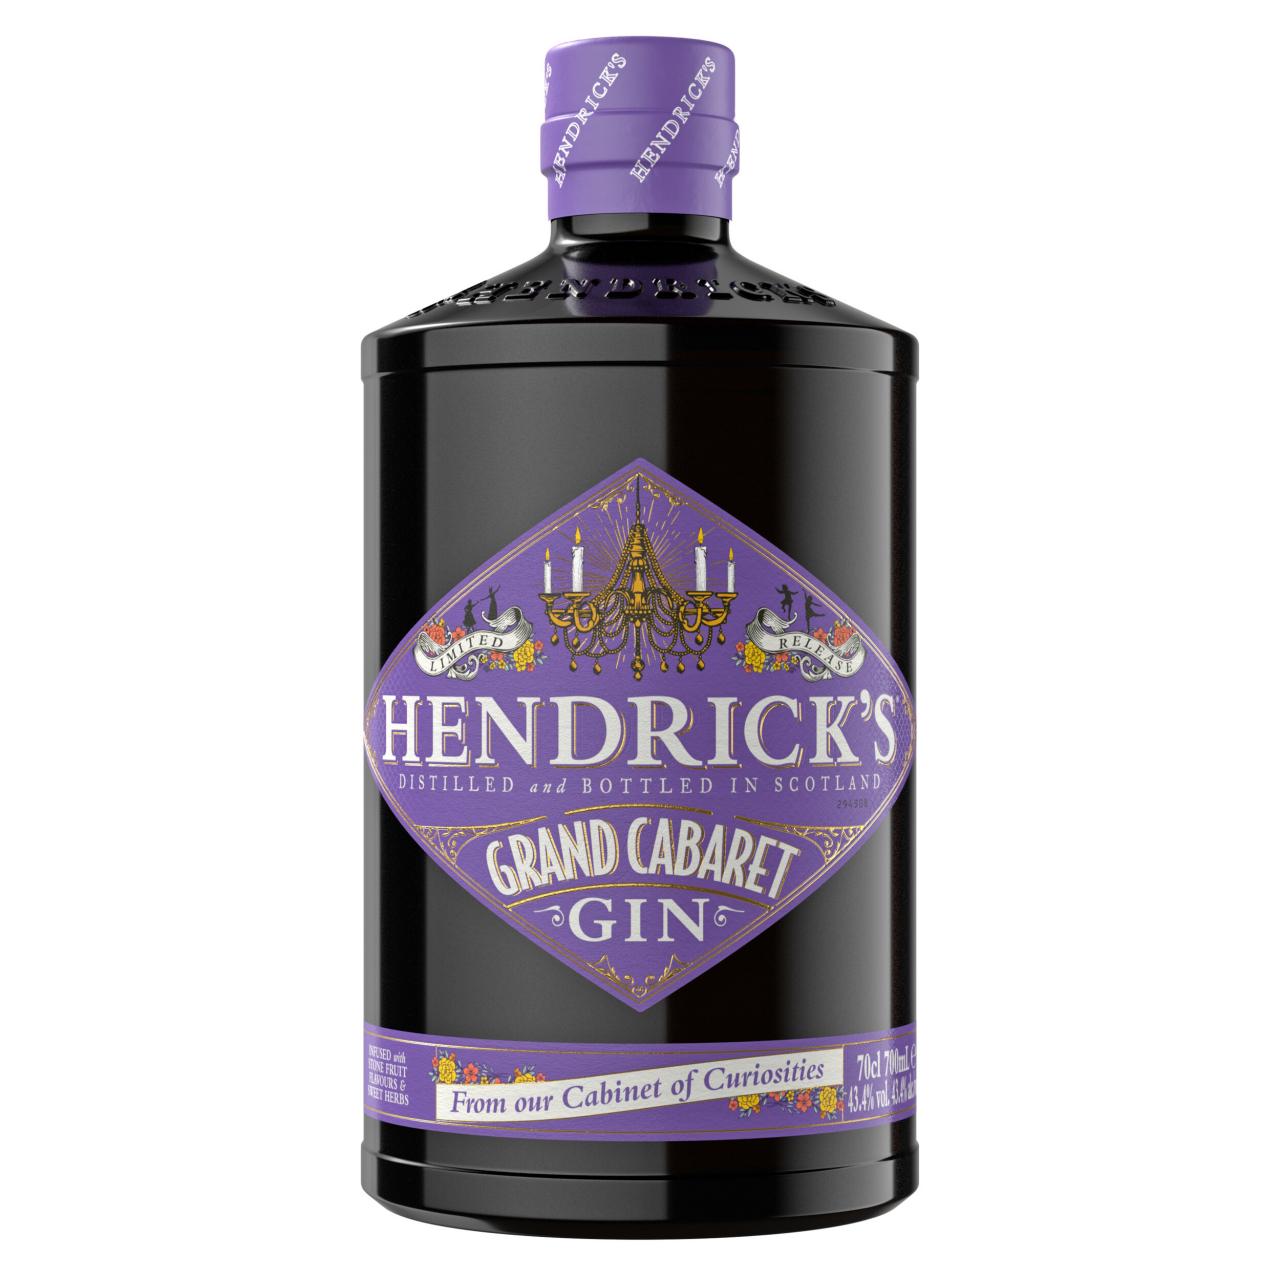 Grand Cabarat, de nieuwste telg van Hendrick’s met fruitige steenvruchten - € 46 - Hendrick’s Gin.